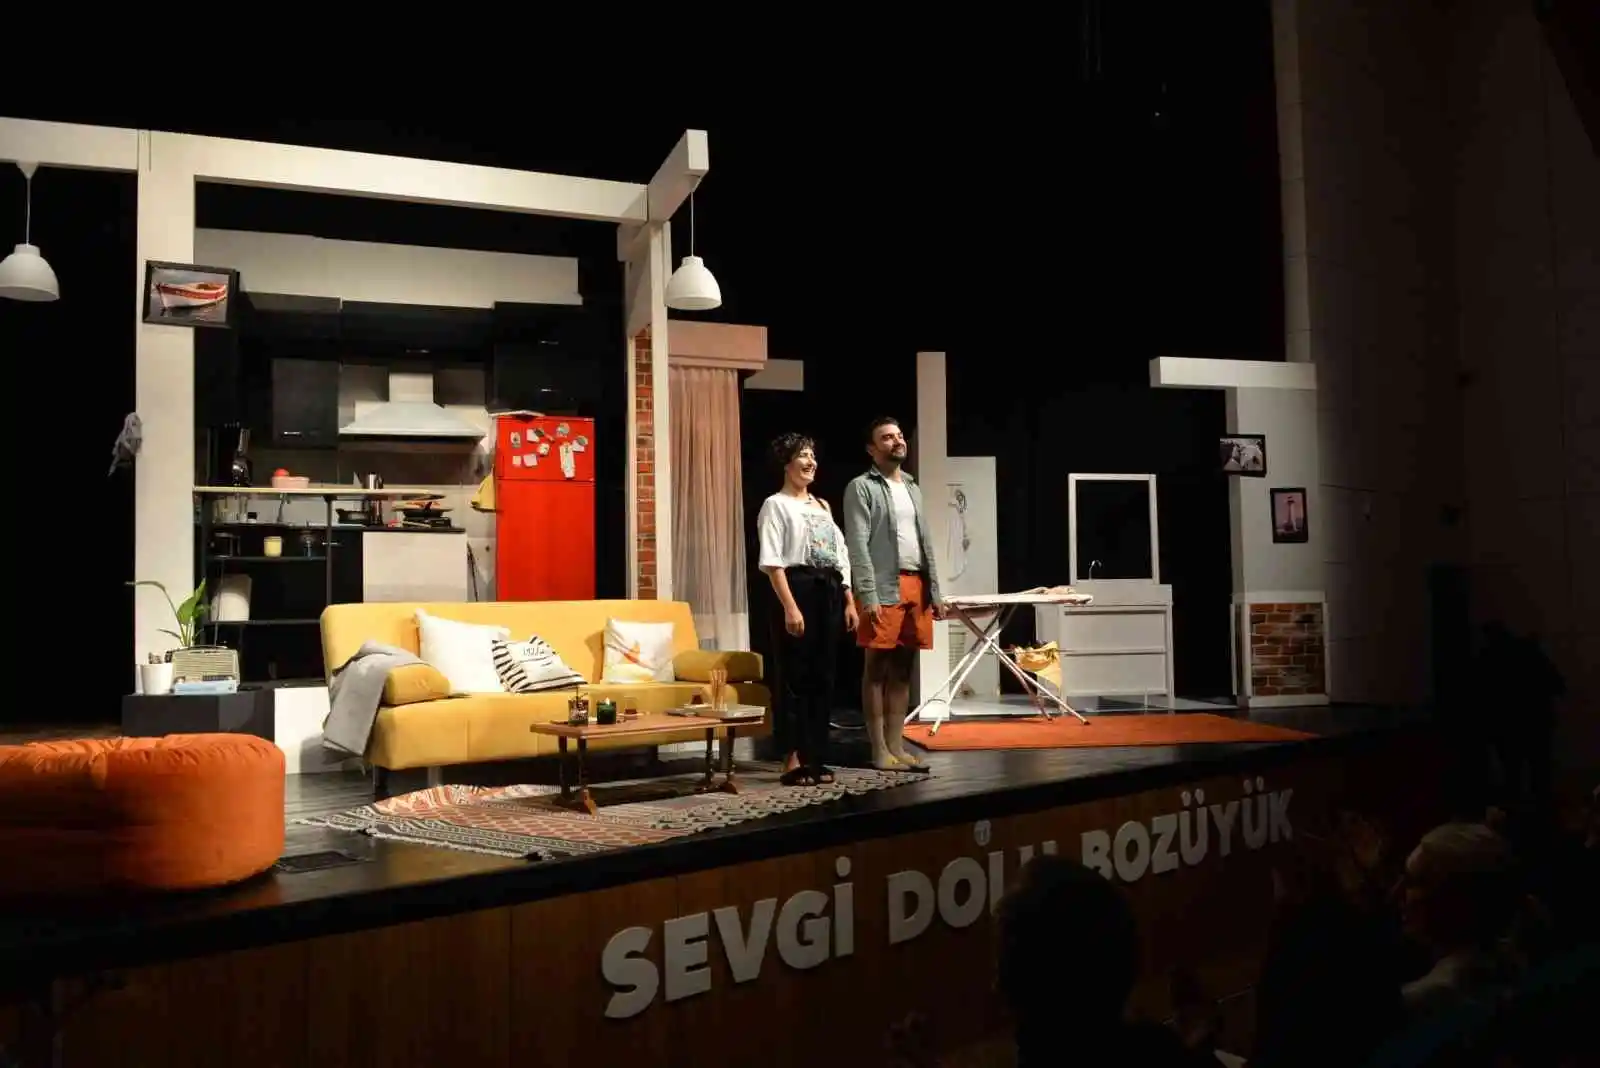 Bozüyük Belediye Tiyatrosu "Ayrılık" ile sahnede
